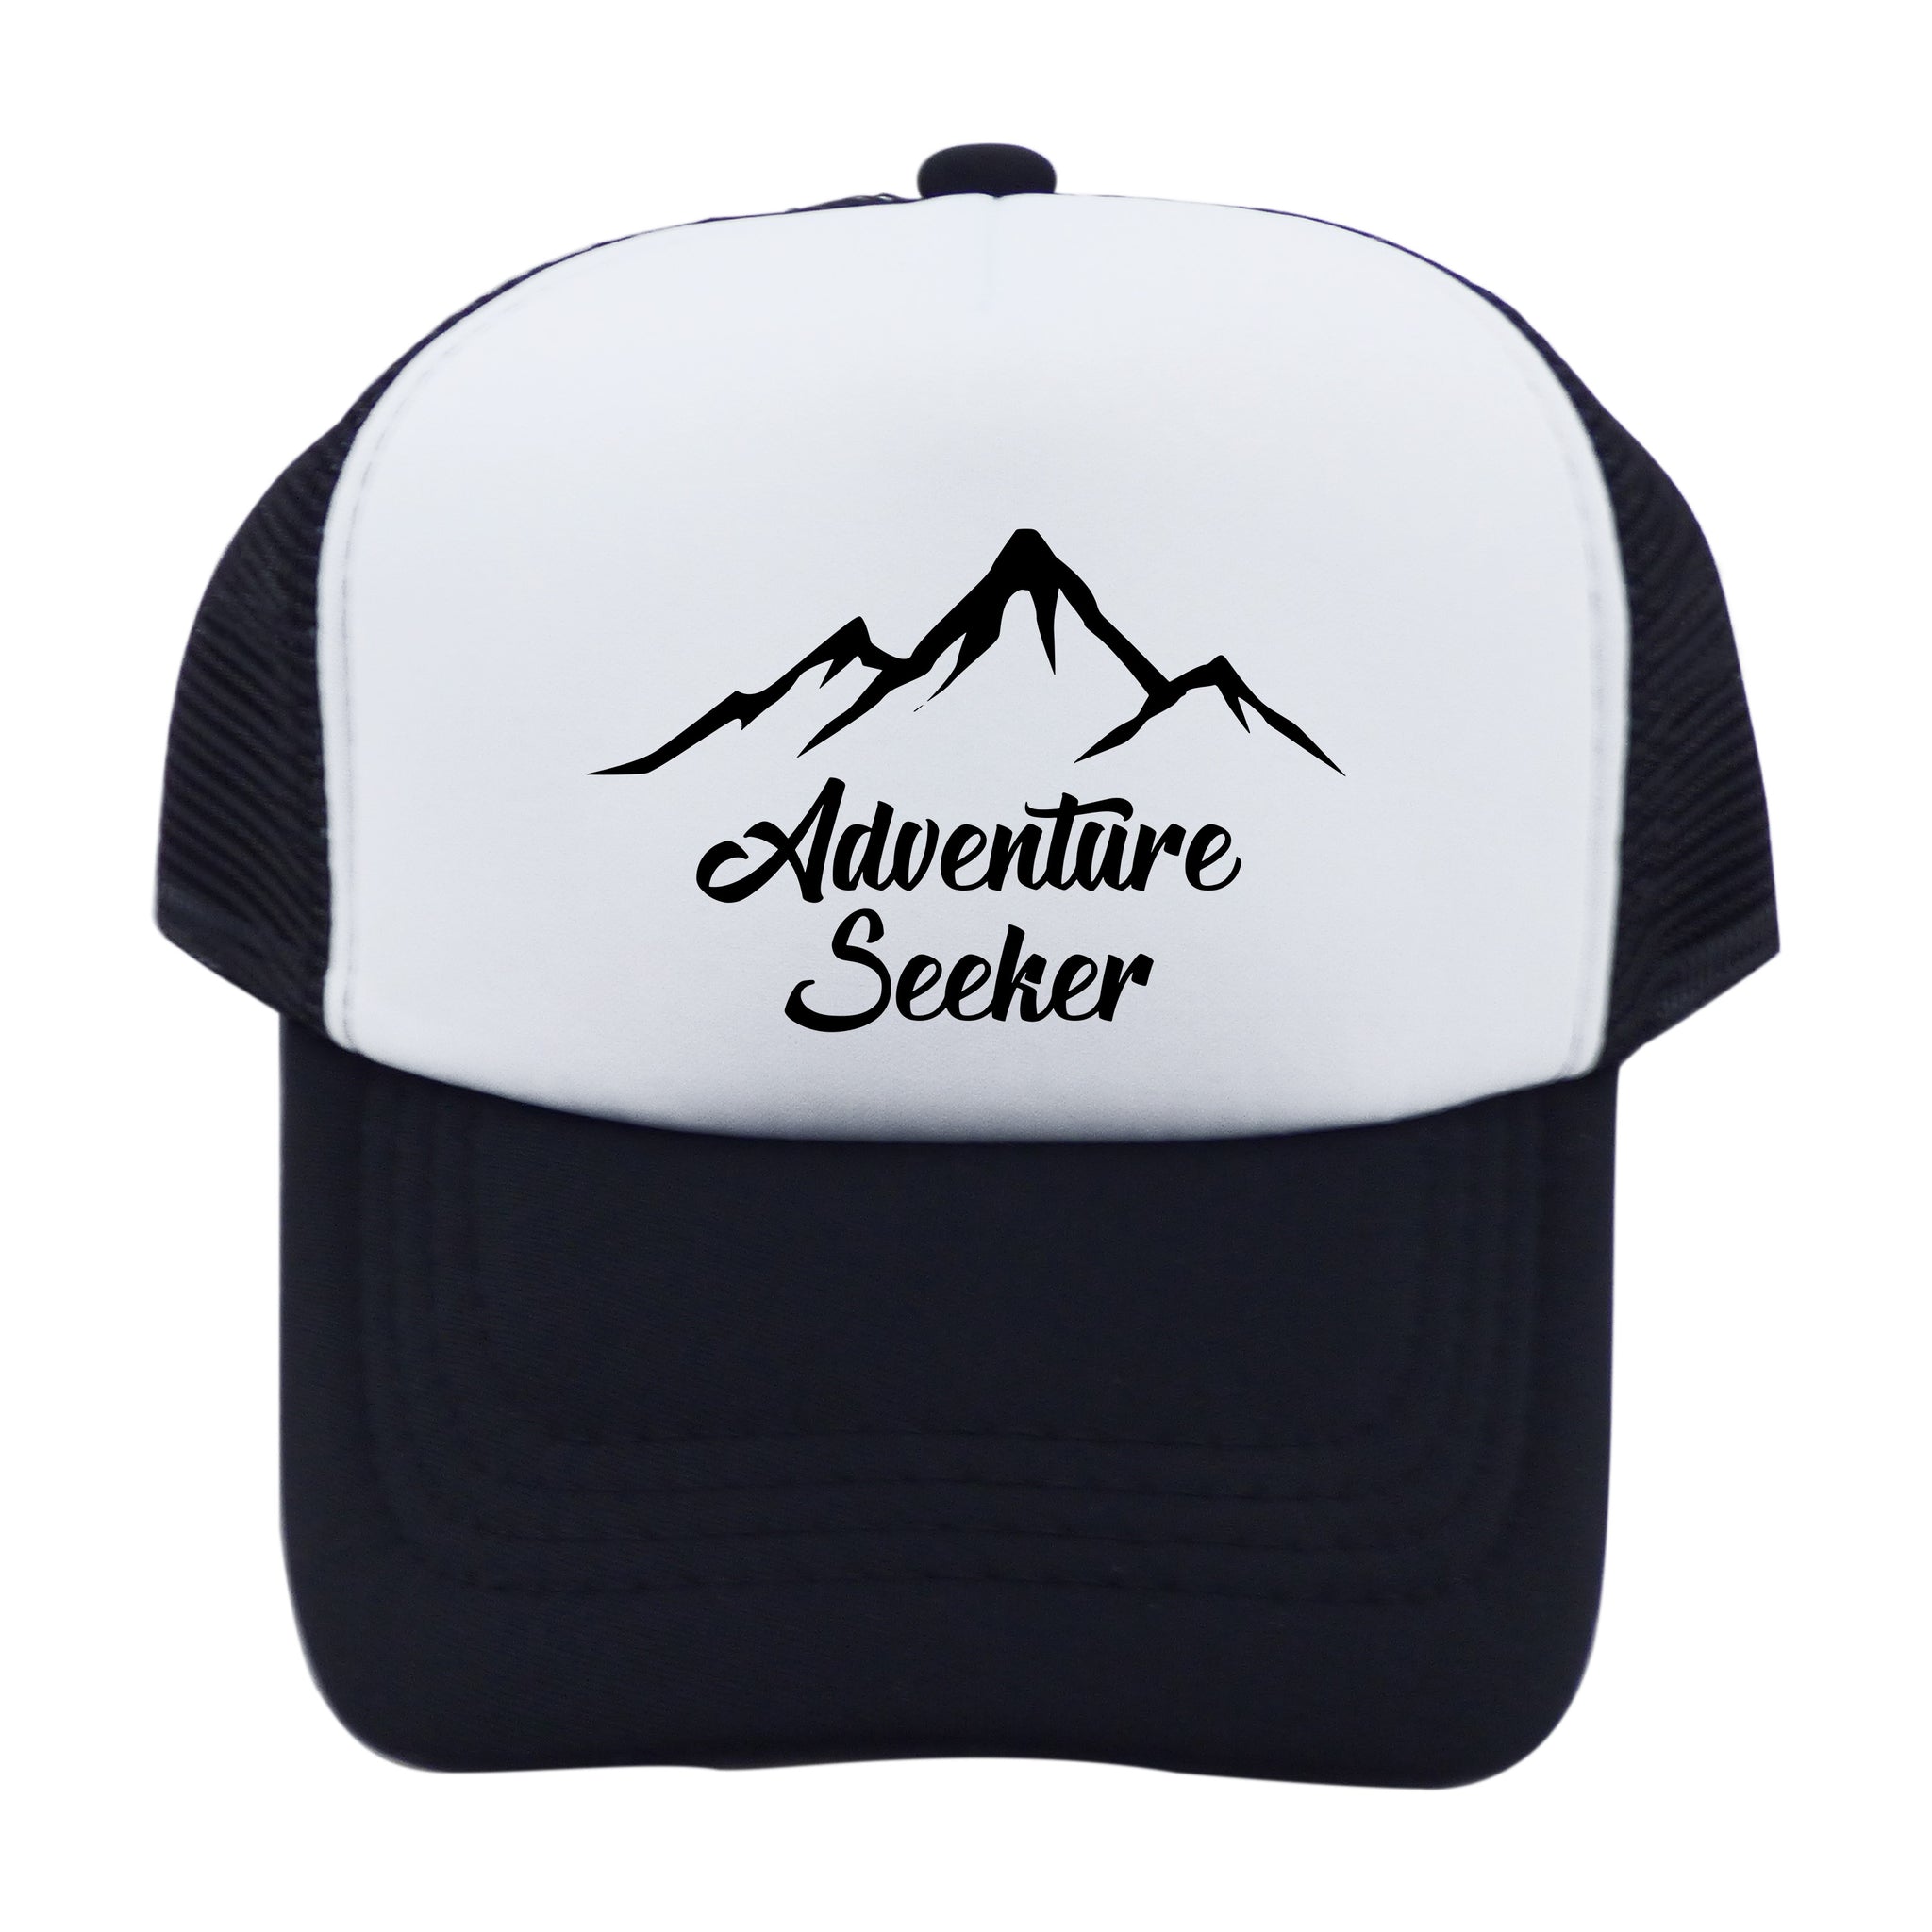 Adventure Seeker Trucker Wholesale